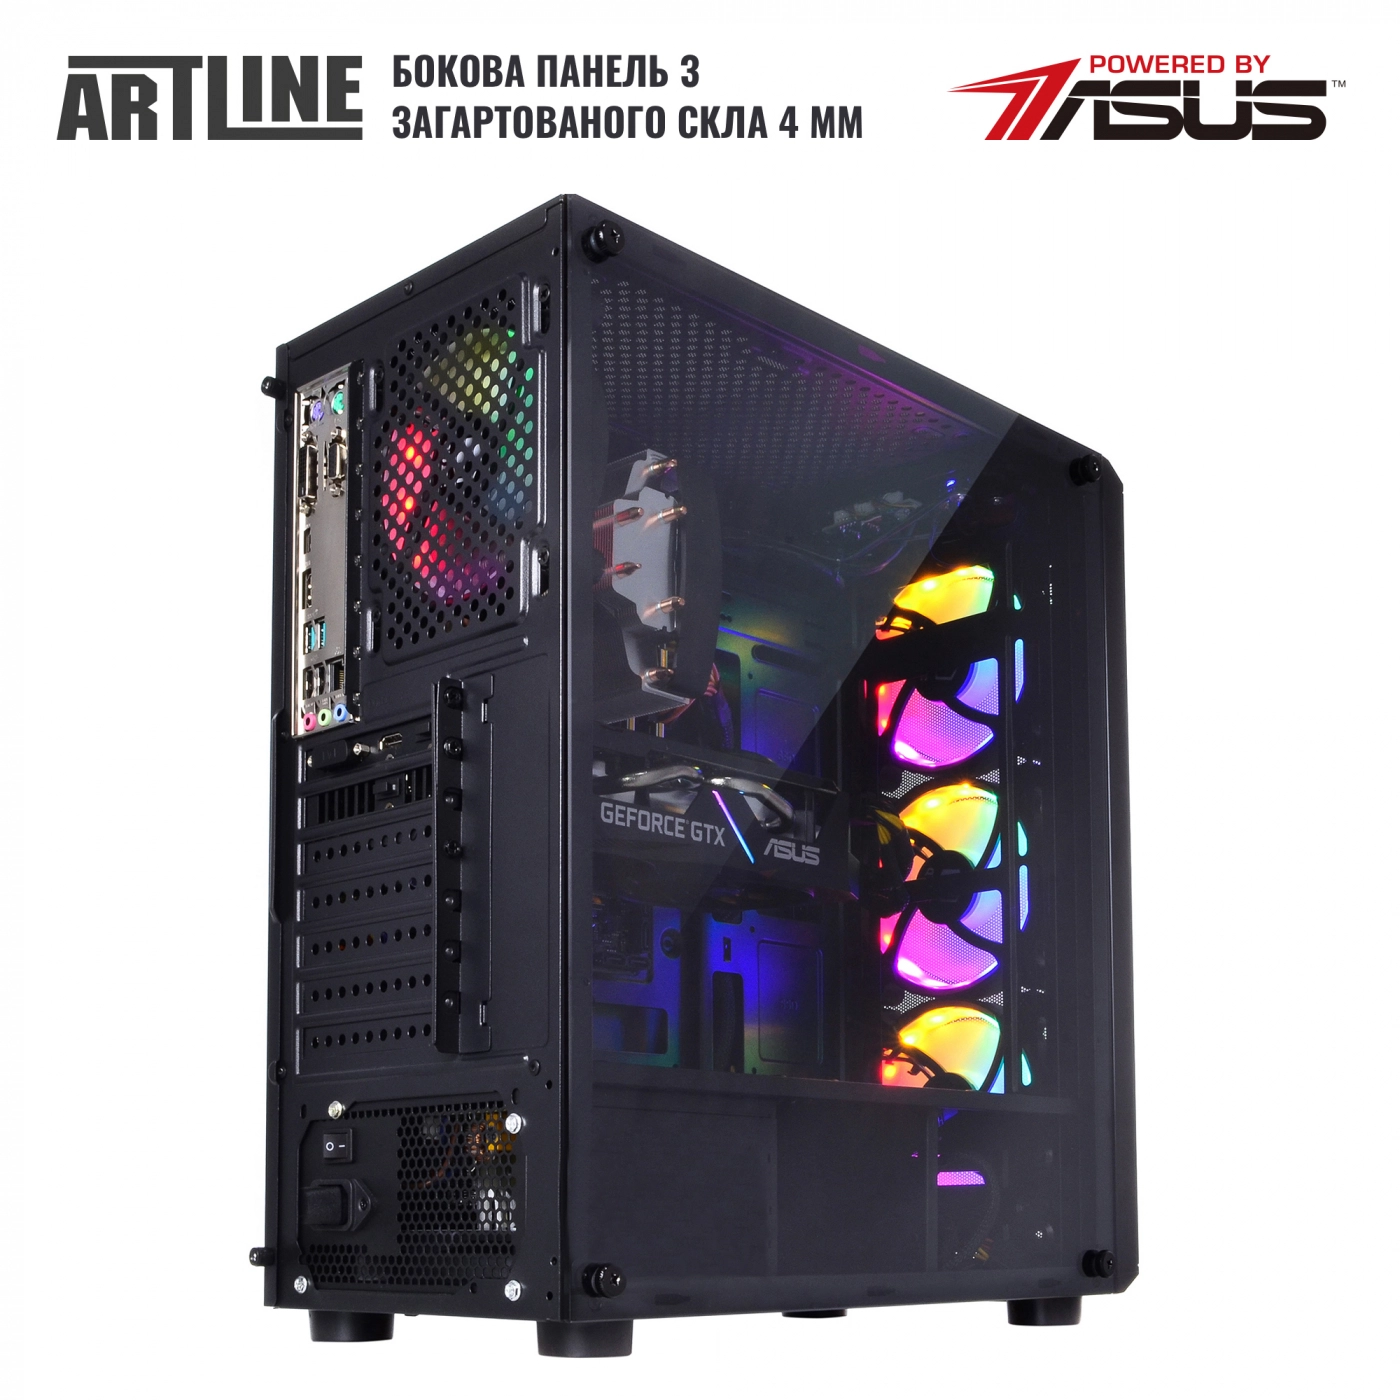 Купить Компьютер ARTLINE Gaming X39v65 - фото 9